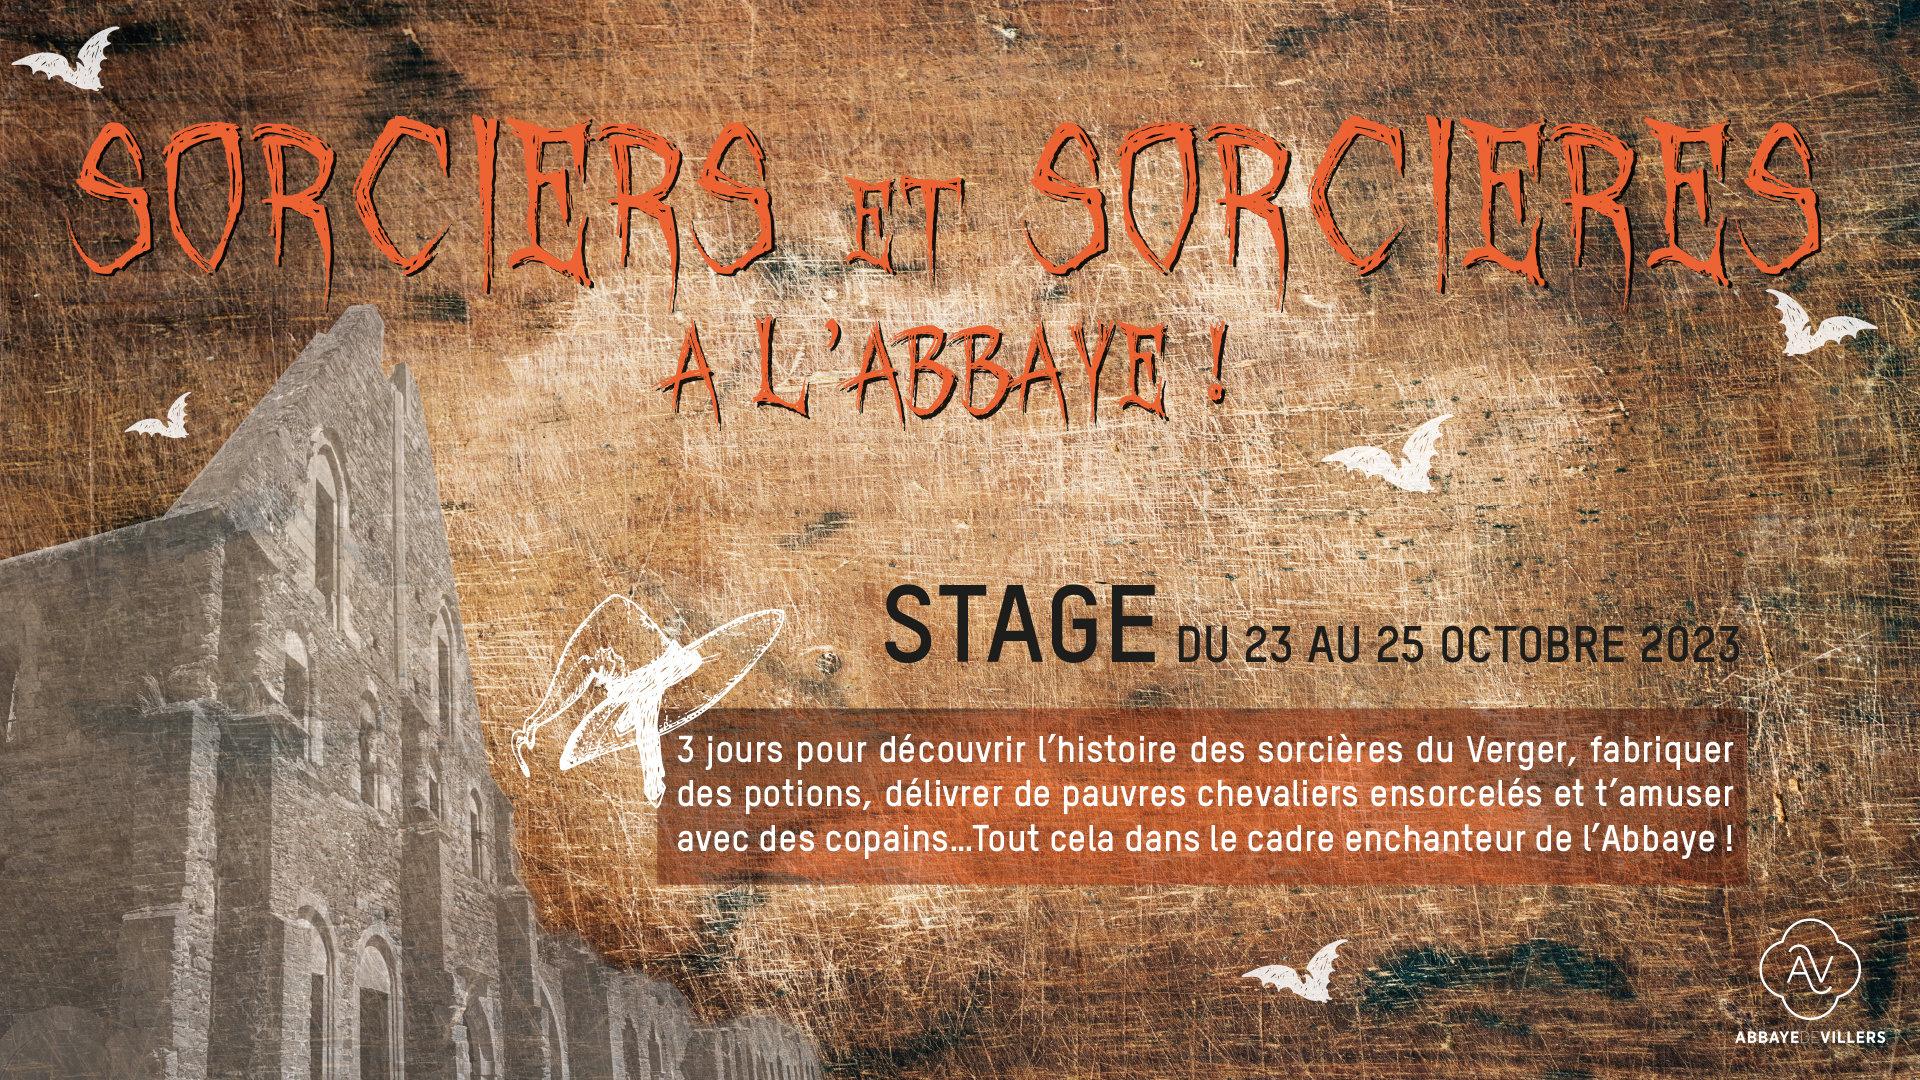 Stage Sorciers et Sorcières à l’Abbaye !